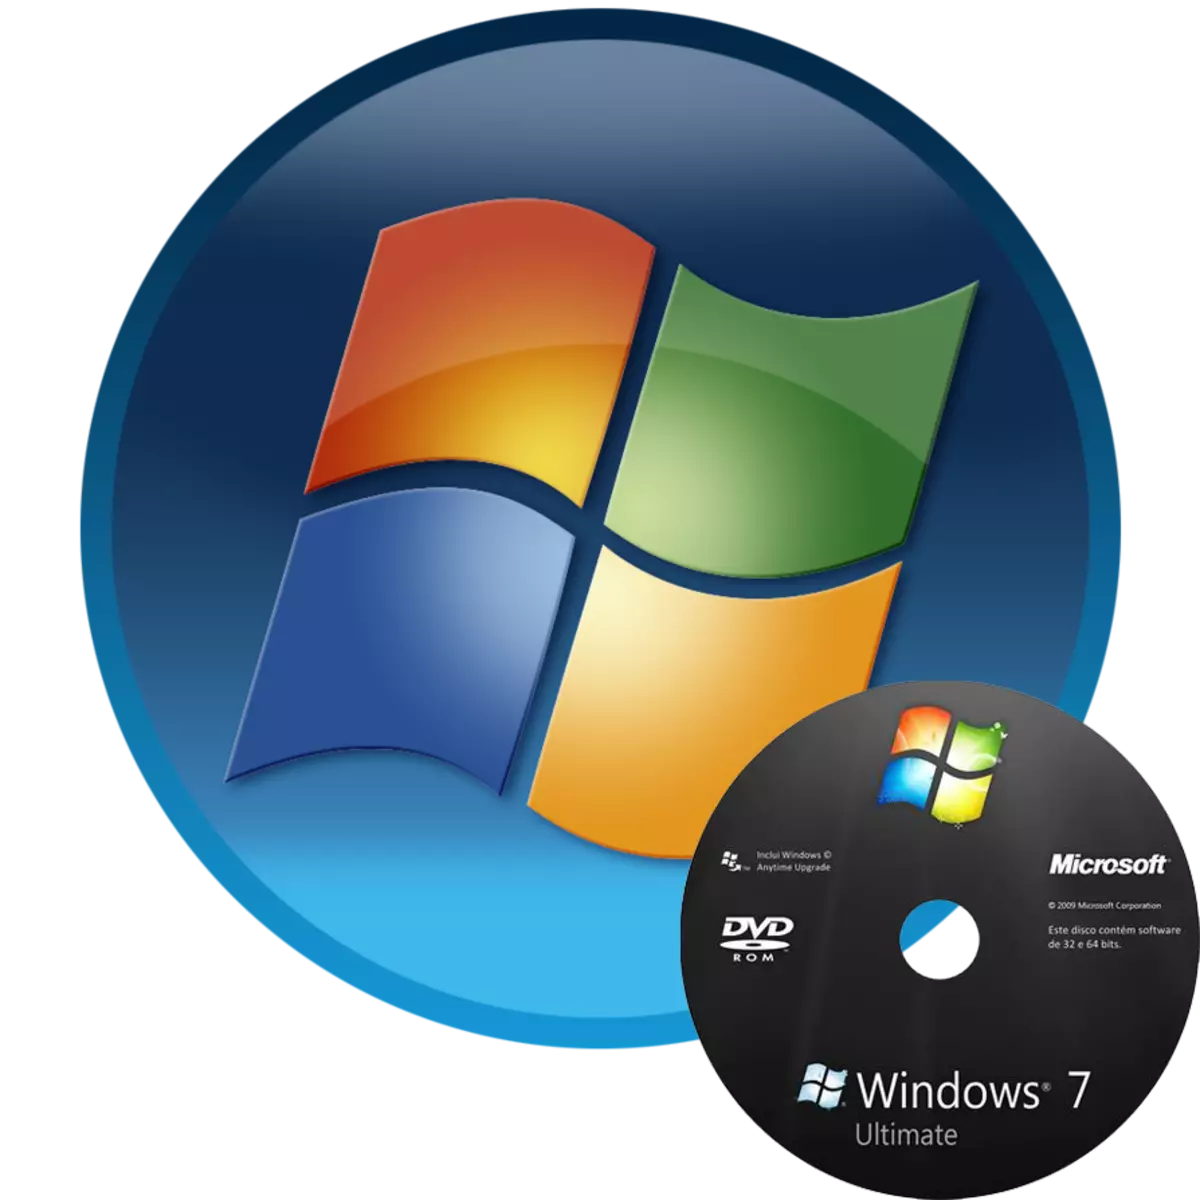 Faapipiiina o Windows 7 mai le faapipiiina disc